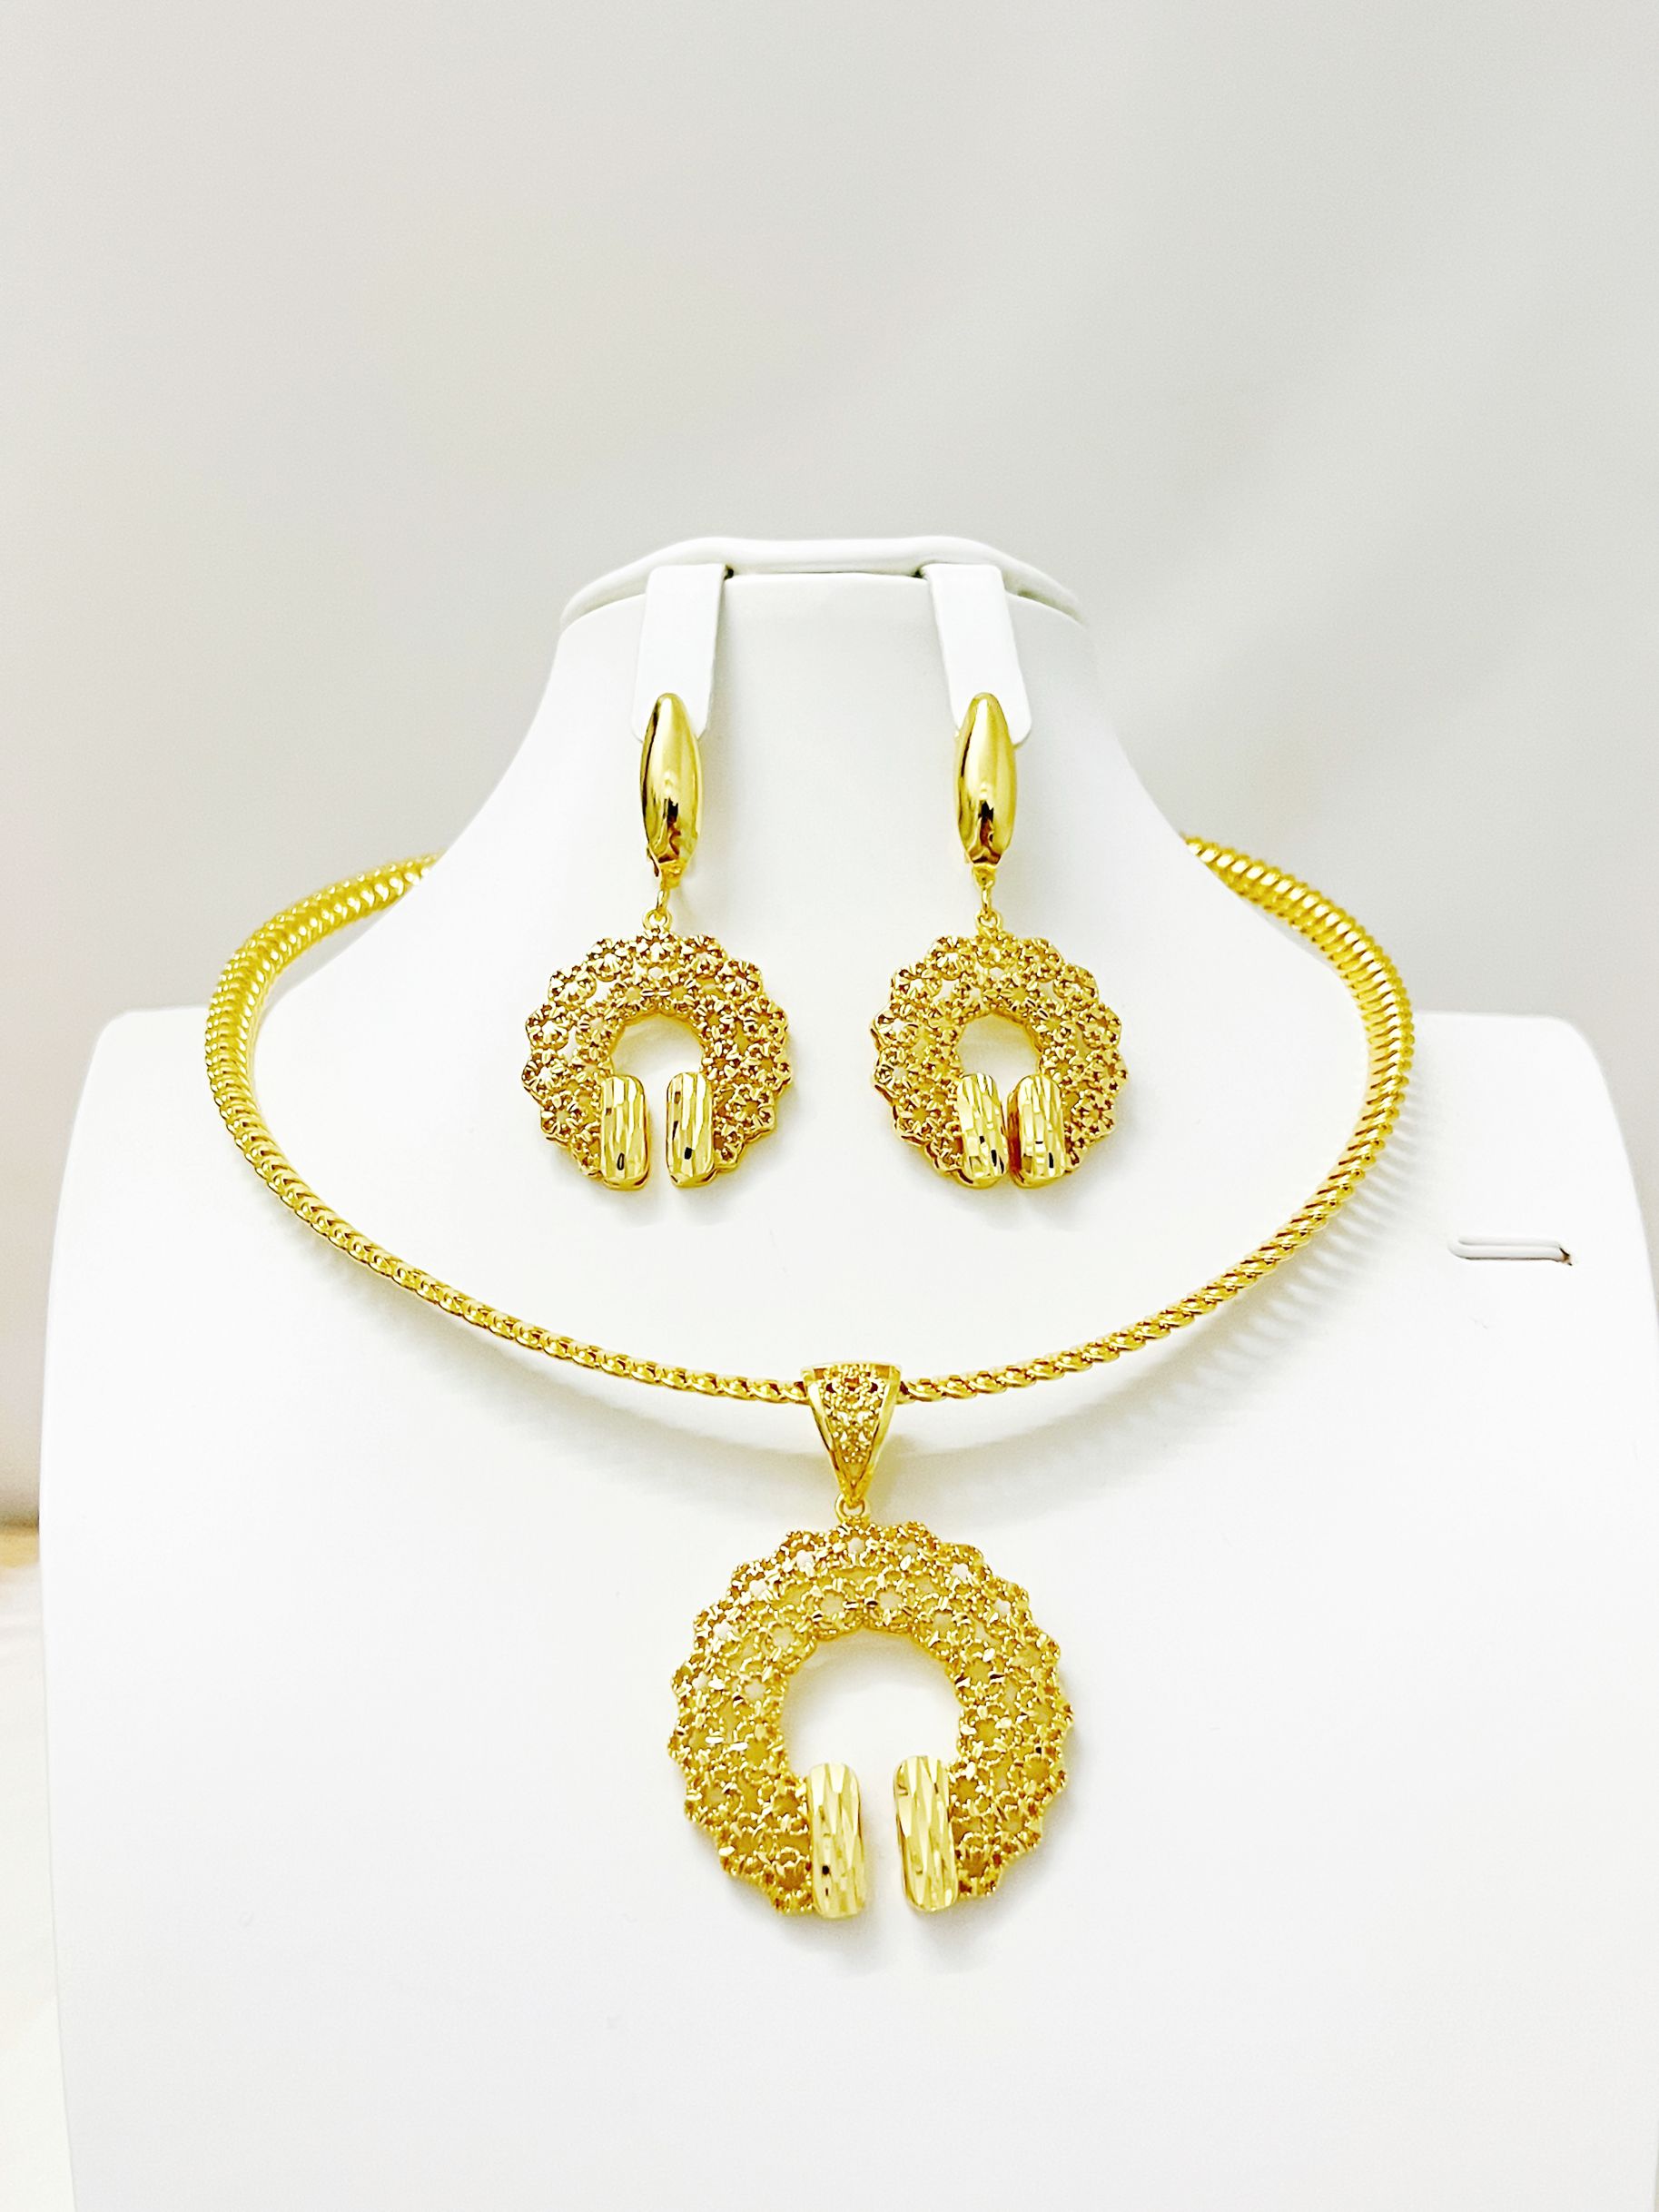 Dubai Jewelry Set Women Wear Party Wedding Anniversary Fashionable - ONEZINOTTA , jewelery that shines like gold...